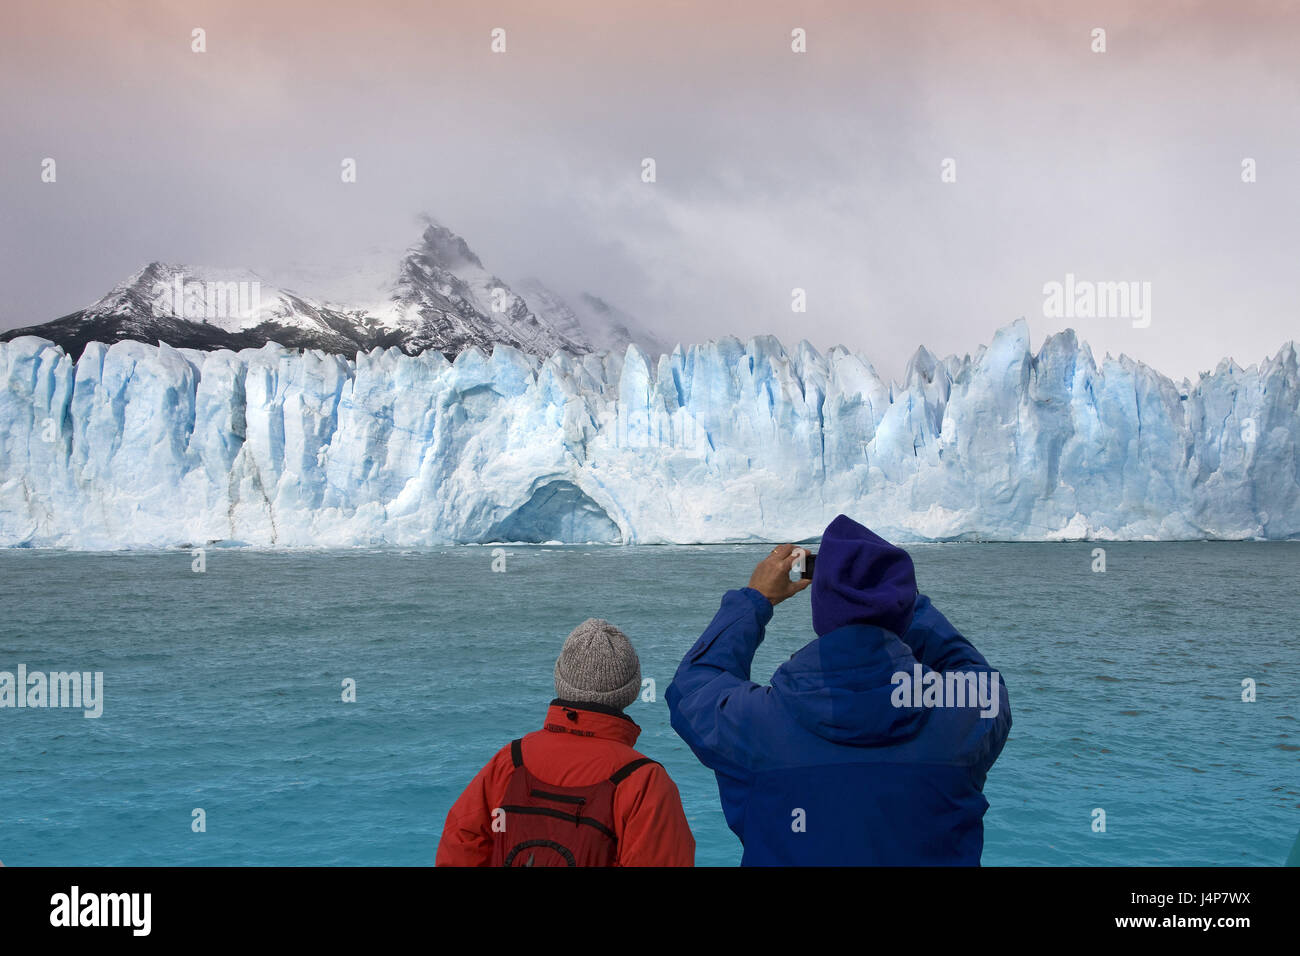 Argentina, Patagonia, Lago Argentino, Glaciar Perito Moreno, scarp, tourist, back view, no model release, Stock Photo